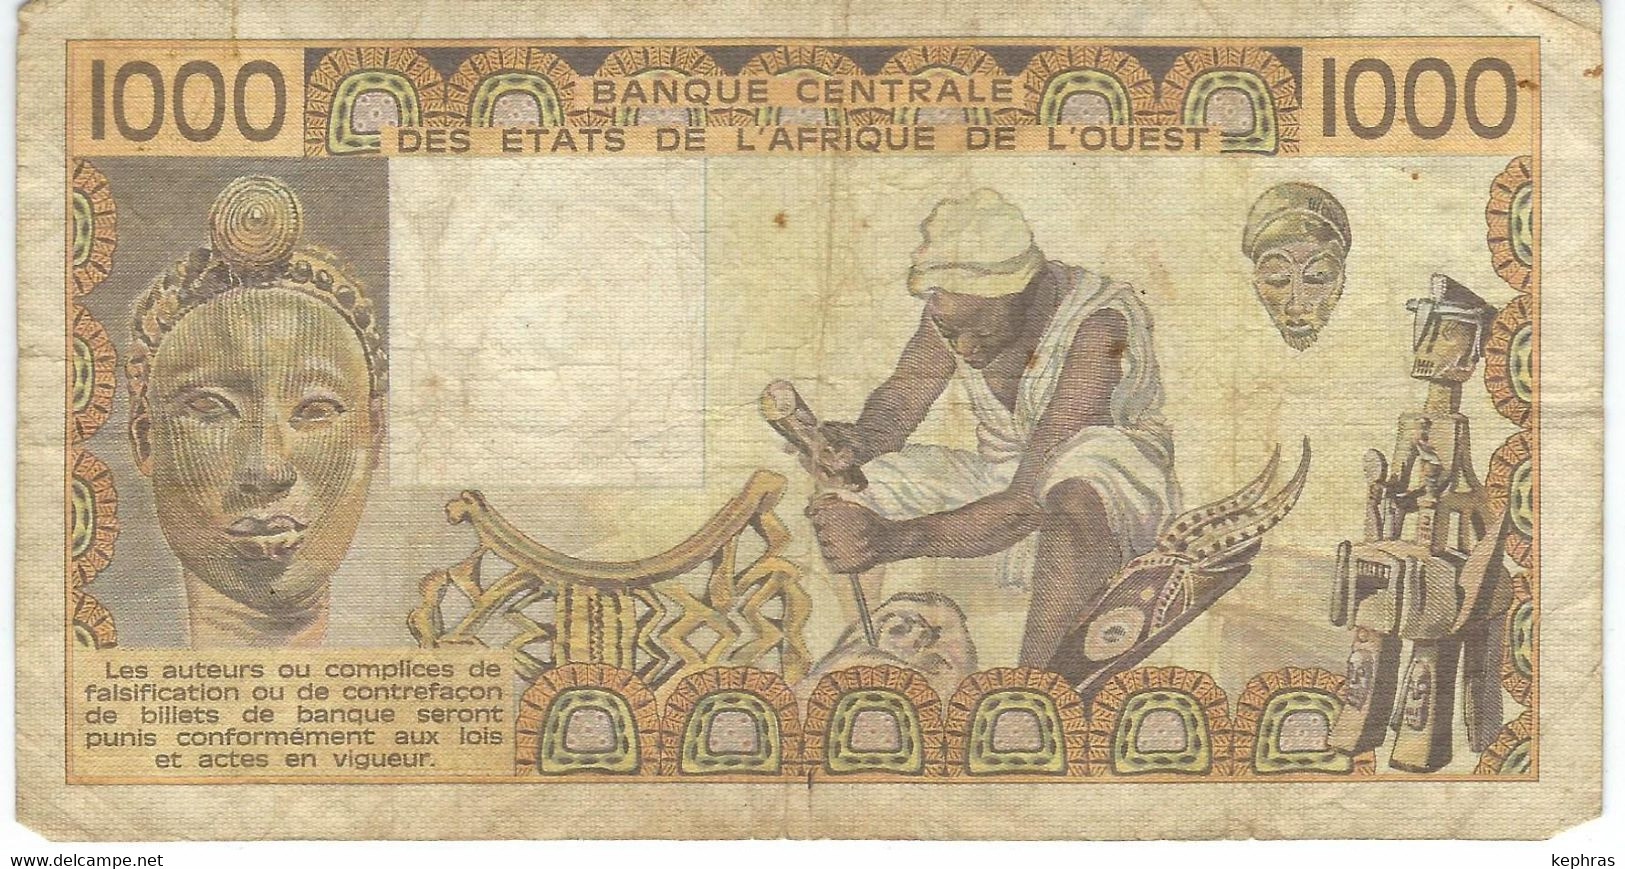 Banque Centrale Etats Afrique De L'Ouest - 1000 Francs - 1981 - Dans L'état - Autres - Afrique